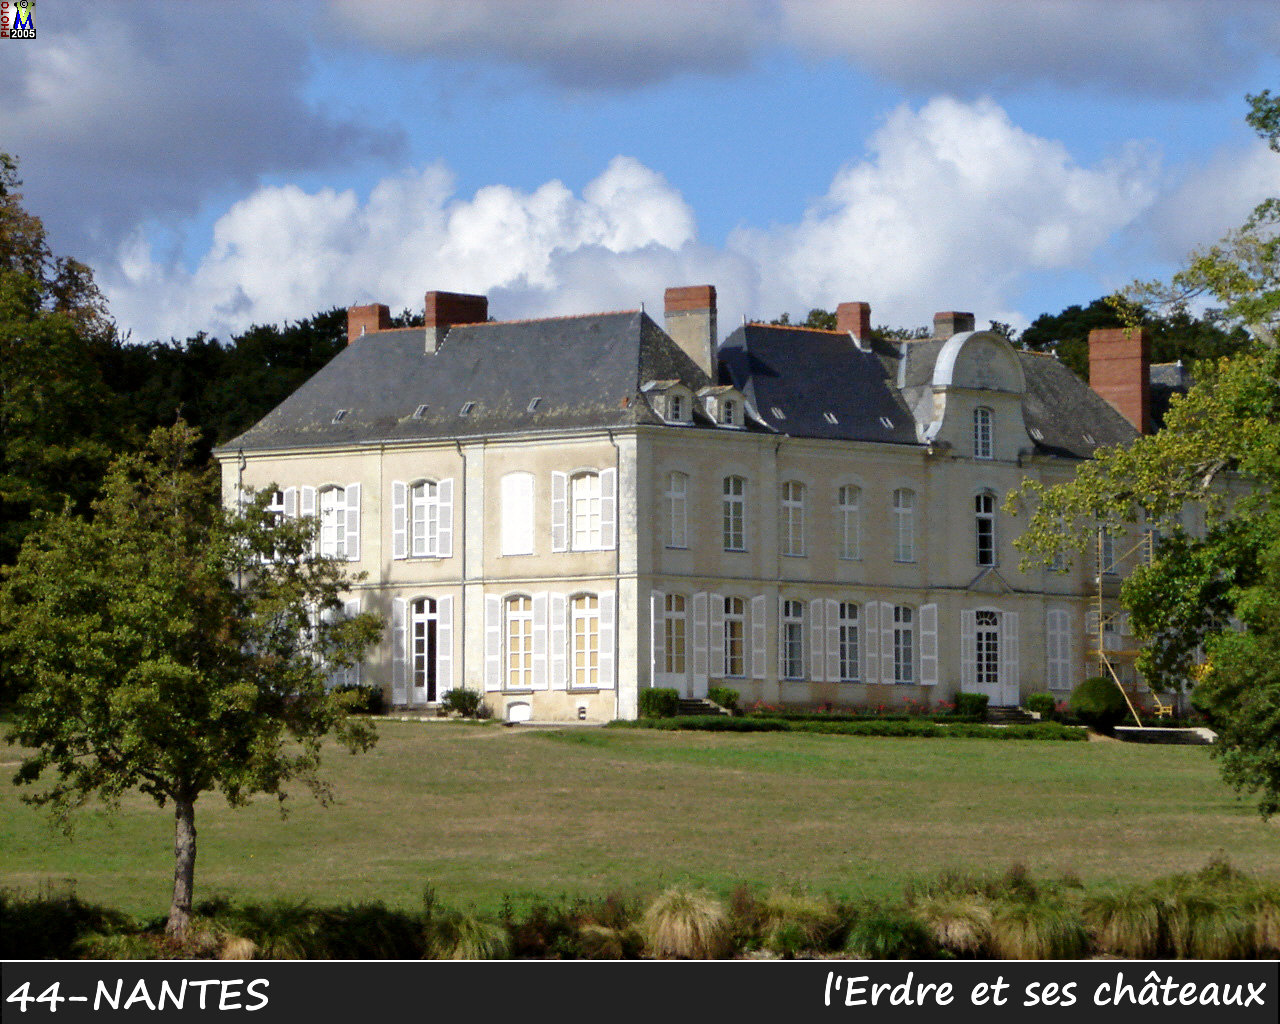 44NANTES_erdre-chateau_124.jpg